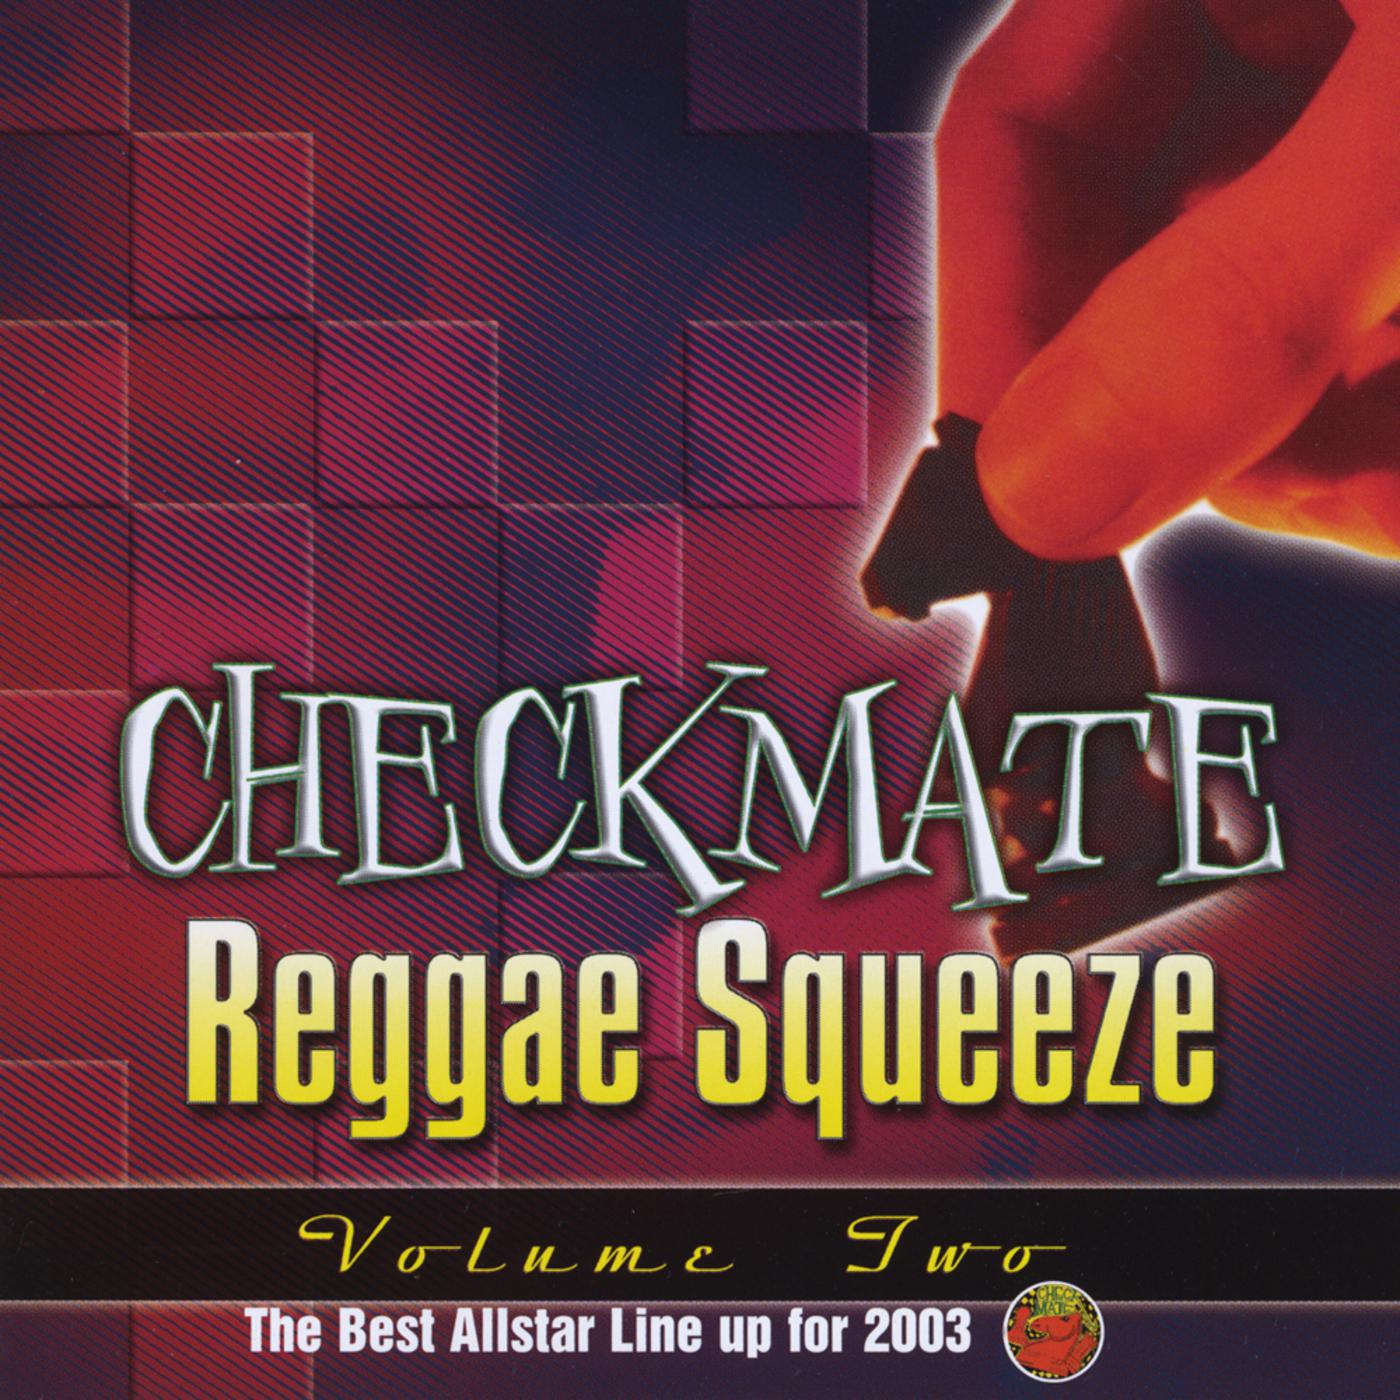 Checkmate Reggae Squeeze Vol.2